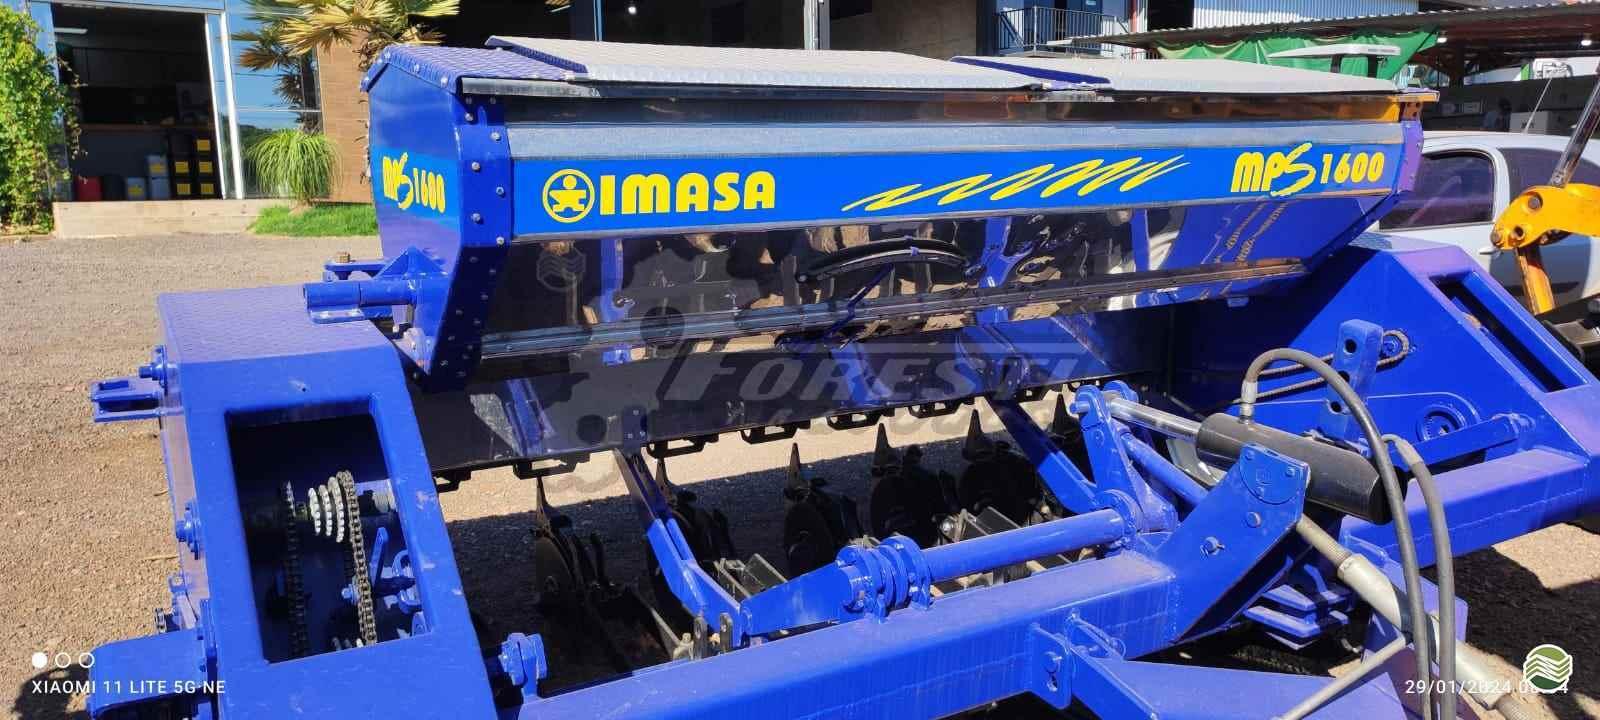 IMASA MPS 1600